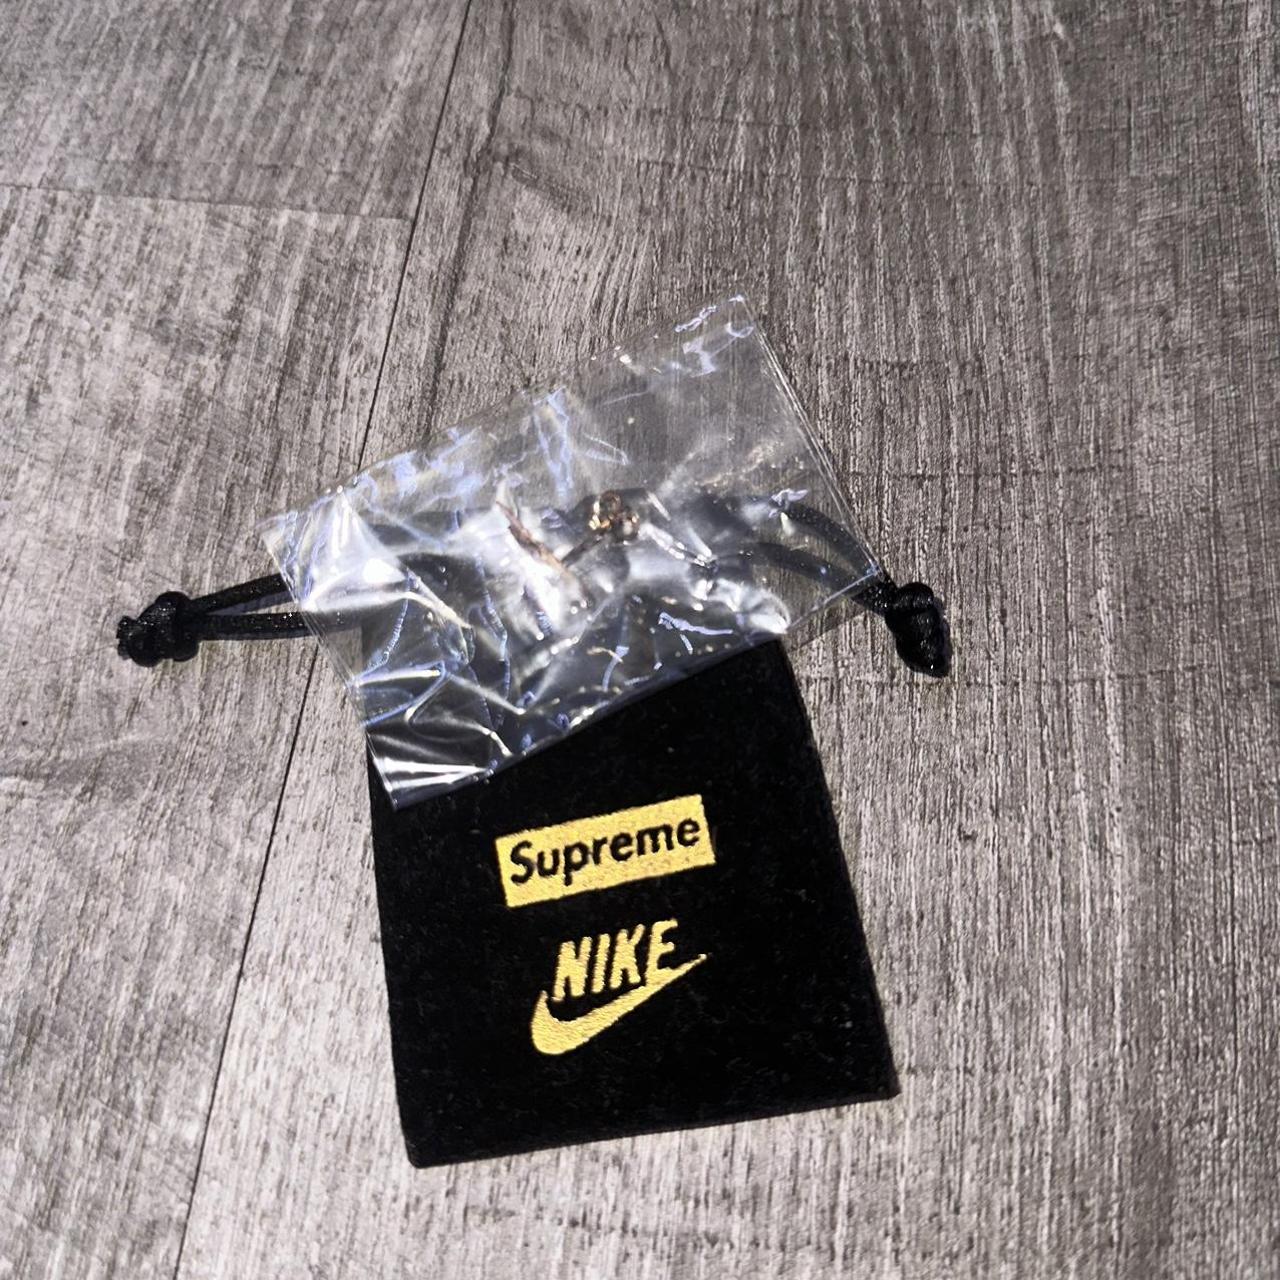 Supreme & Nike 14k Gold Earring...